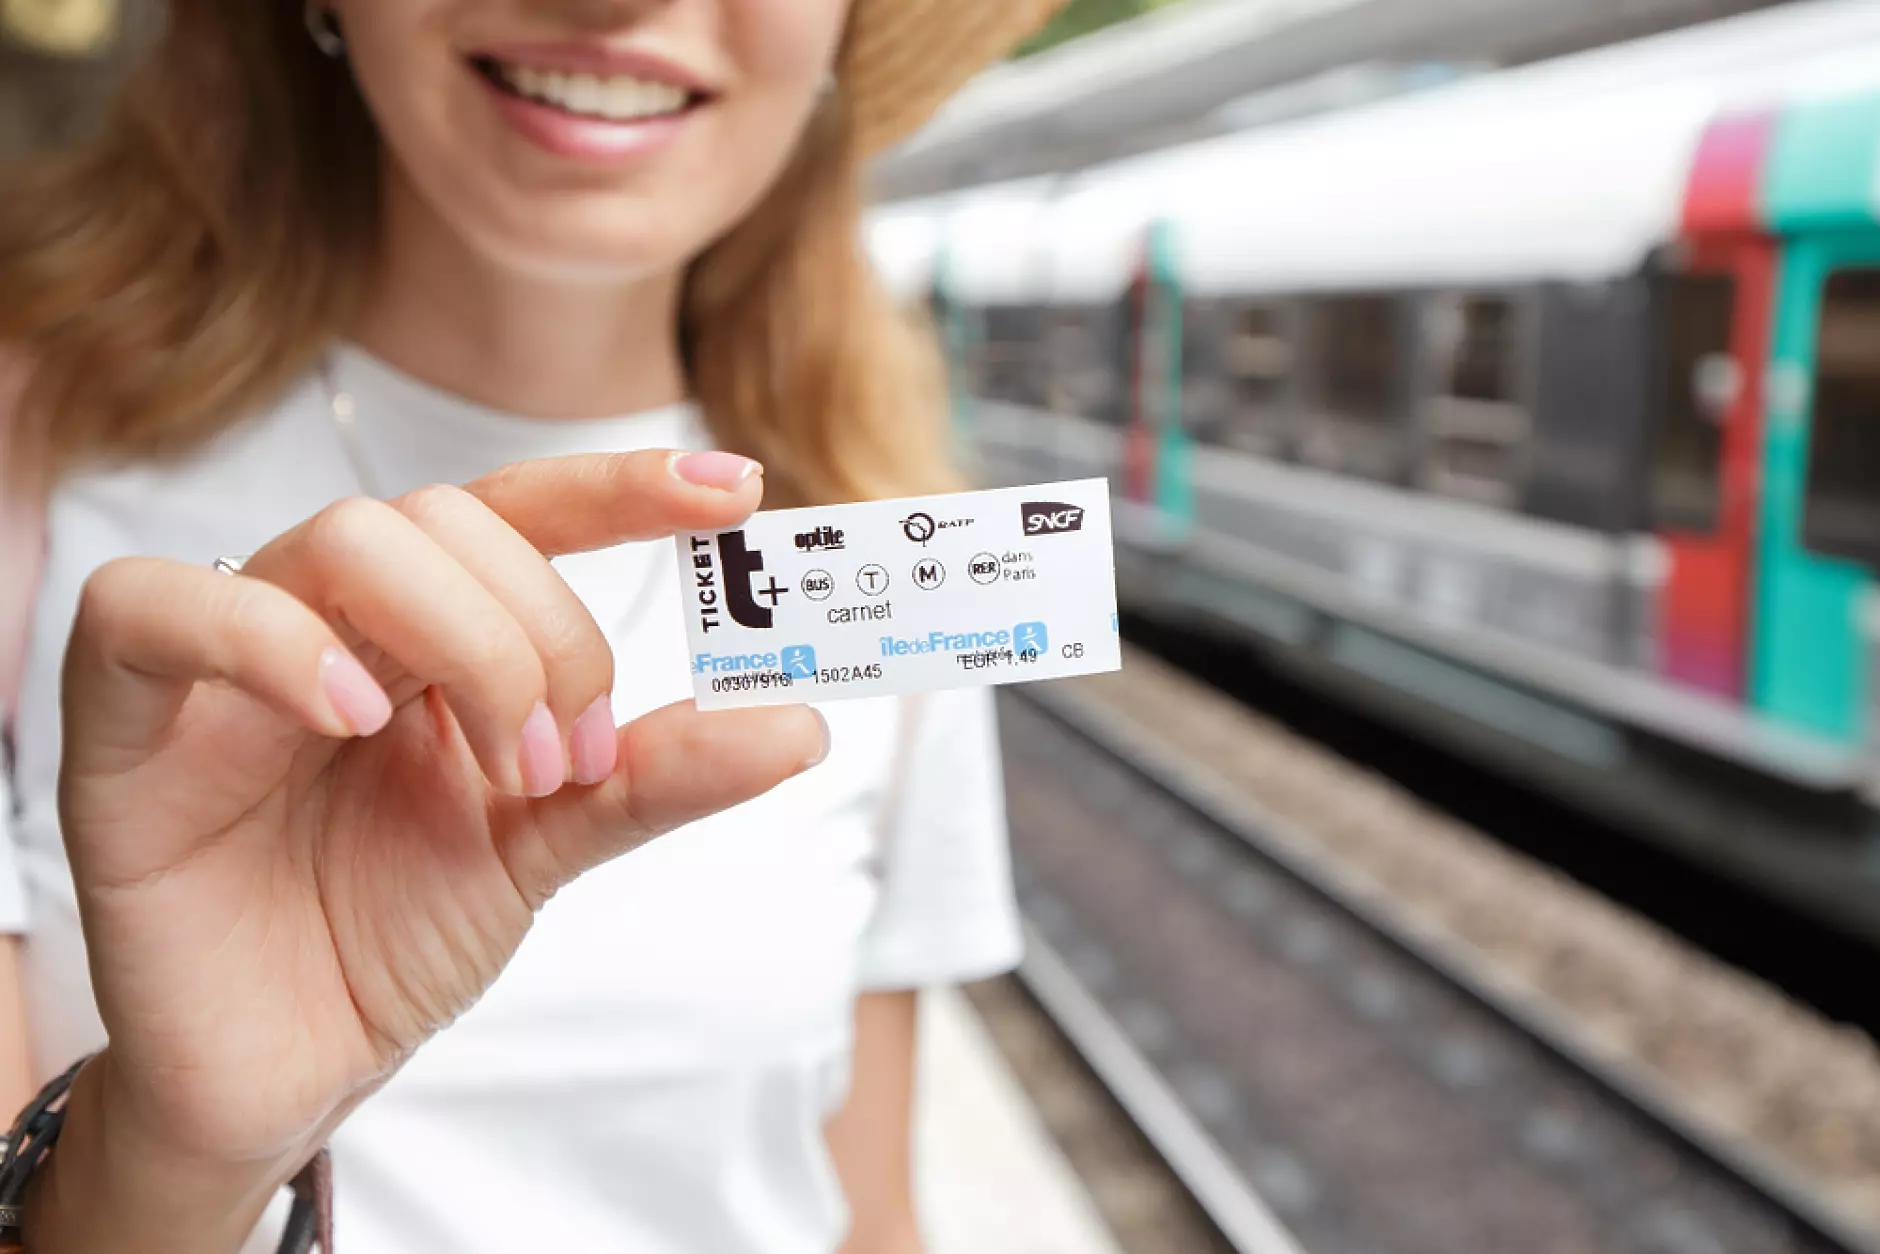 Хартиеният билет за парижкото метро излиза от употреба след повече от 120 години